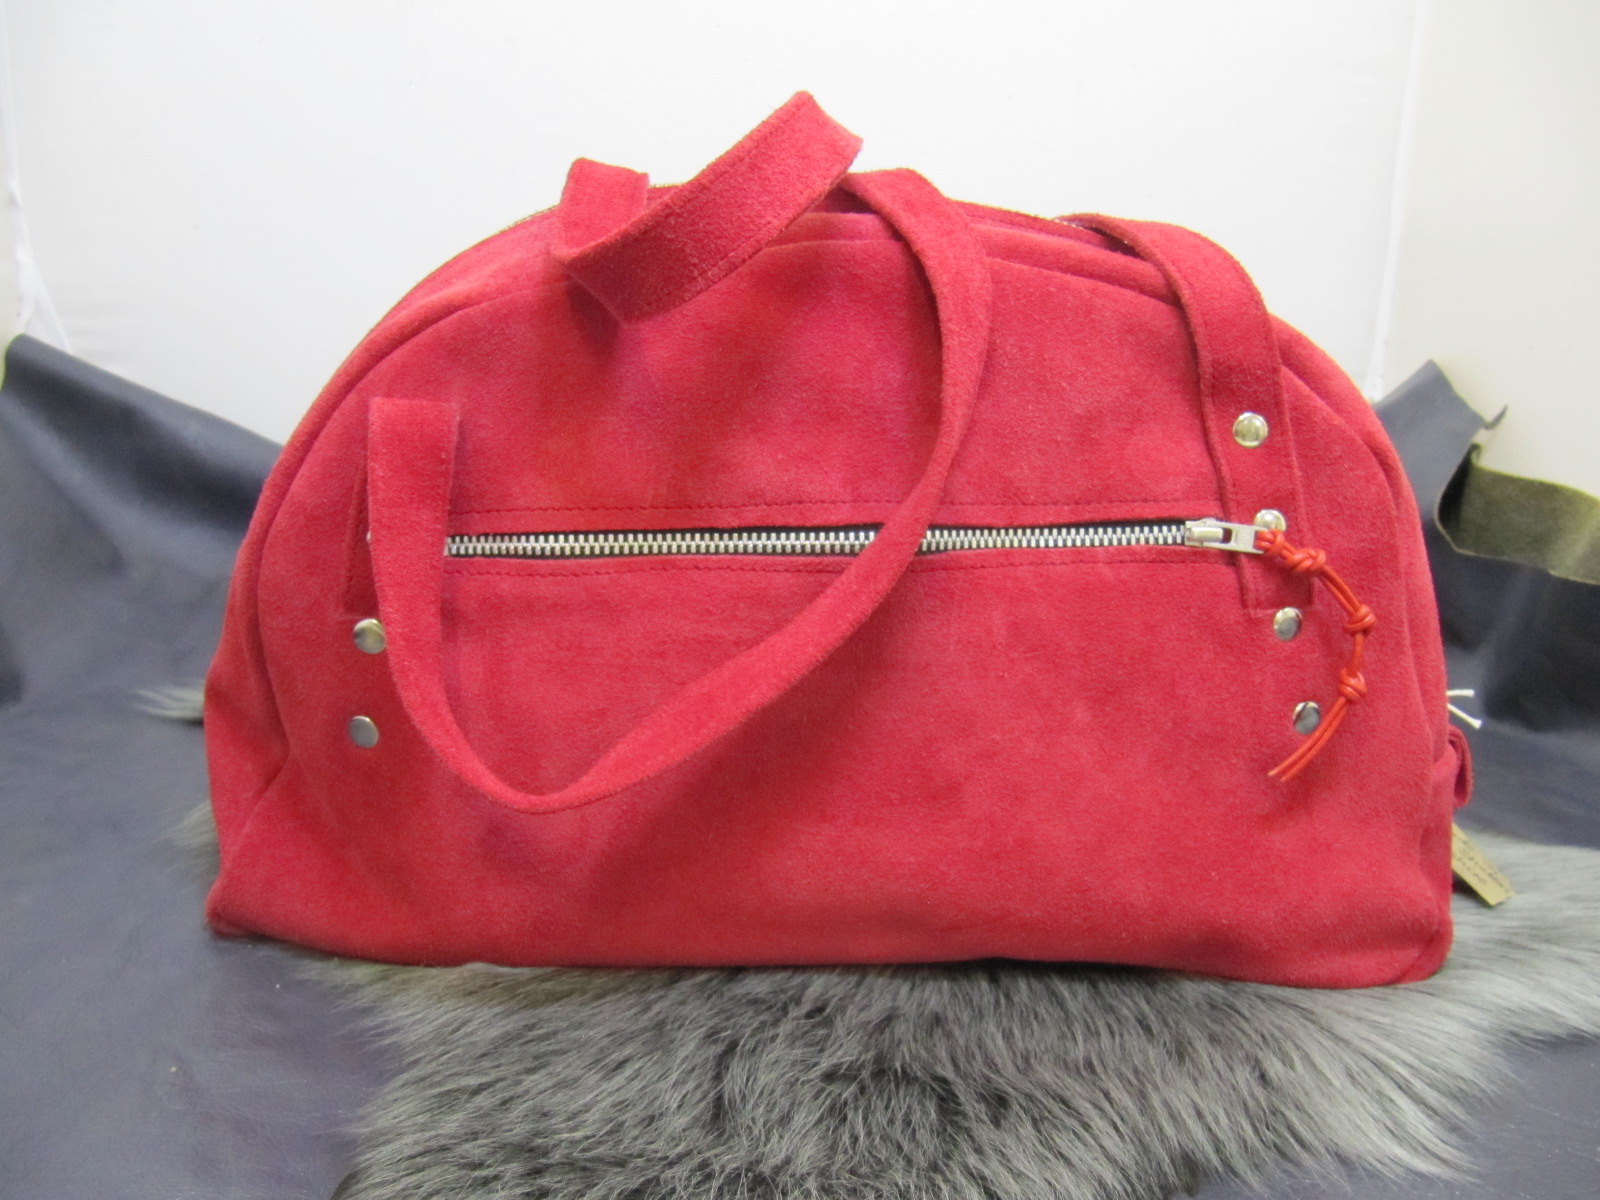 Red suede half moon handbag